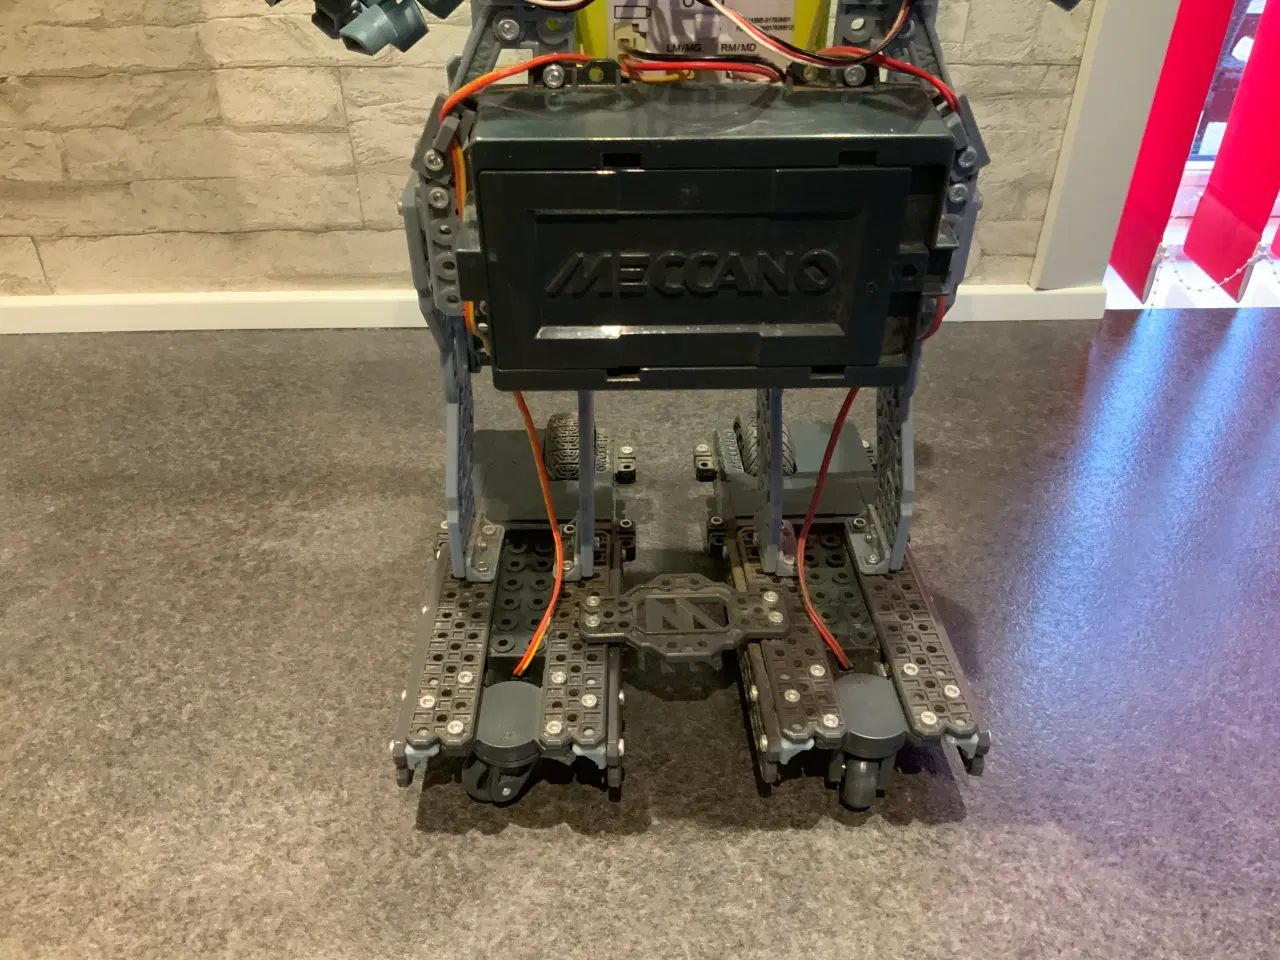 Billede 4 - Mercano robot. Wall E